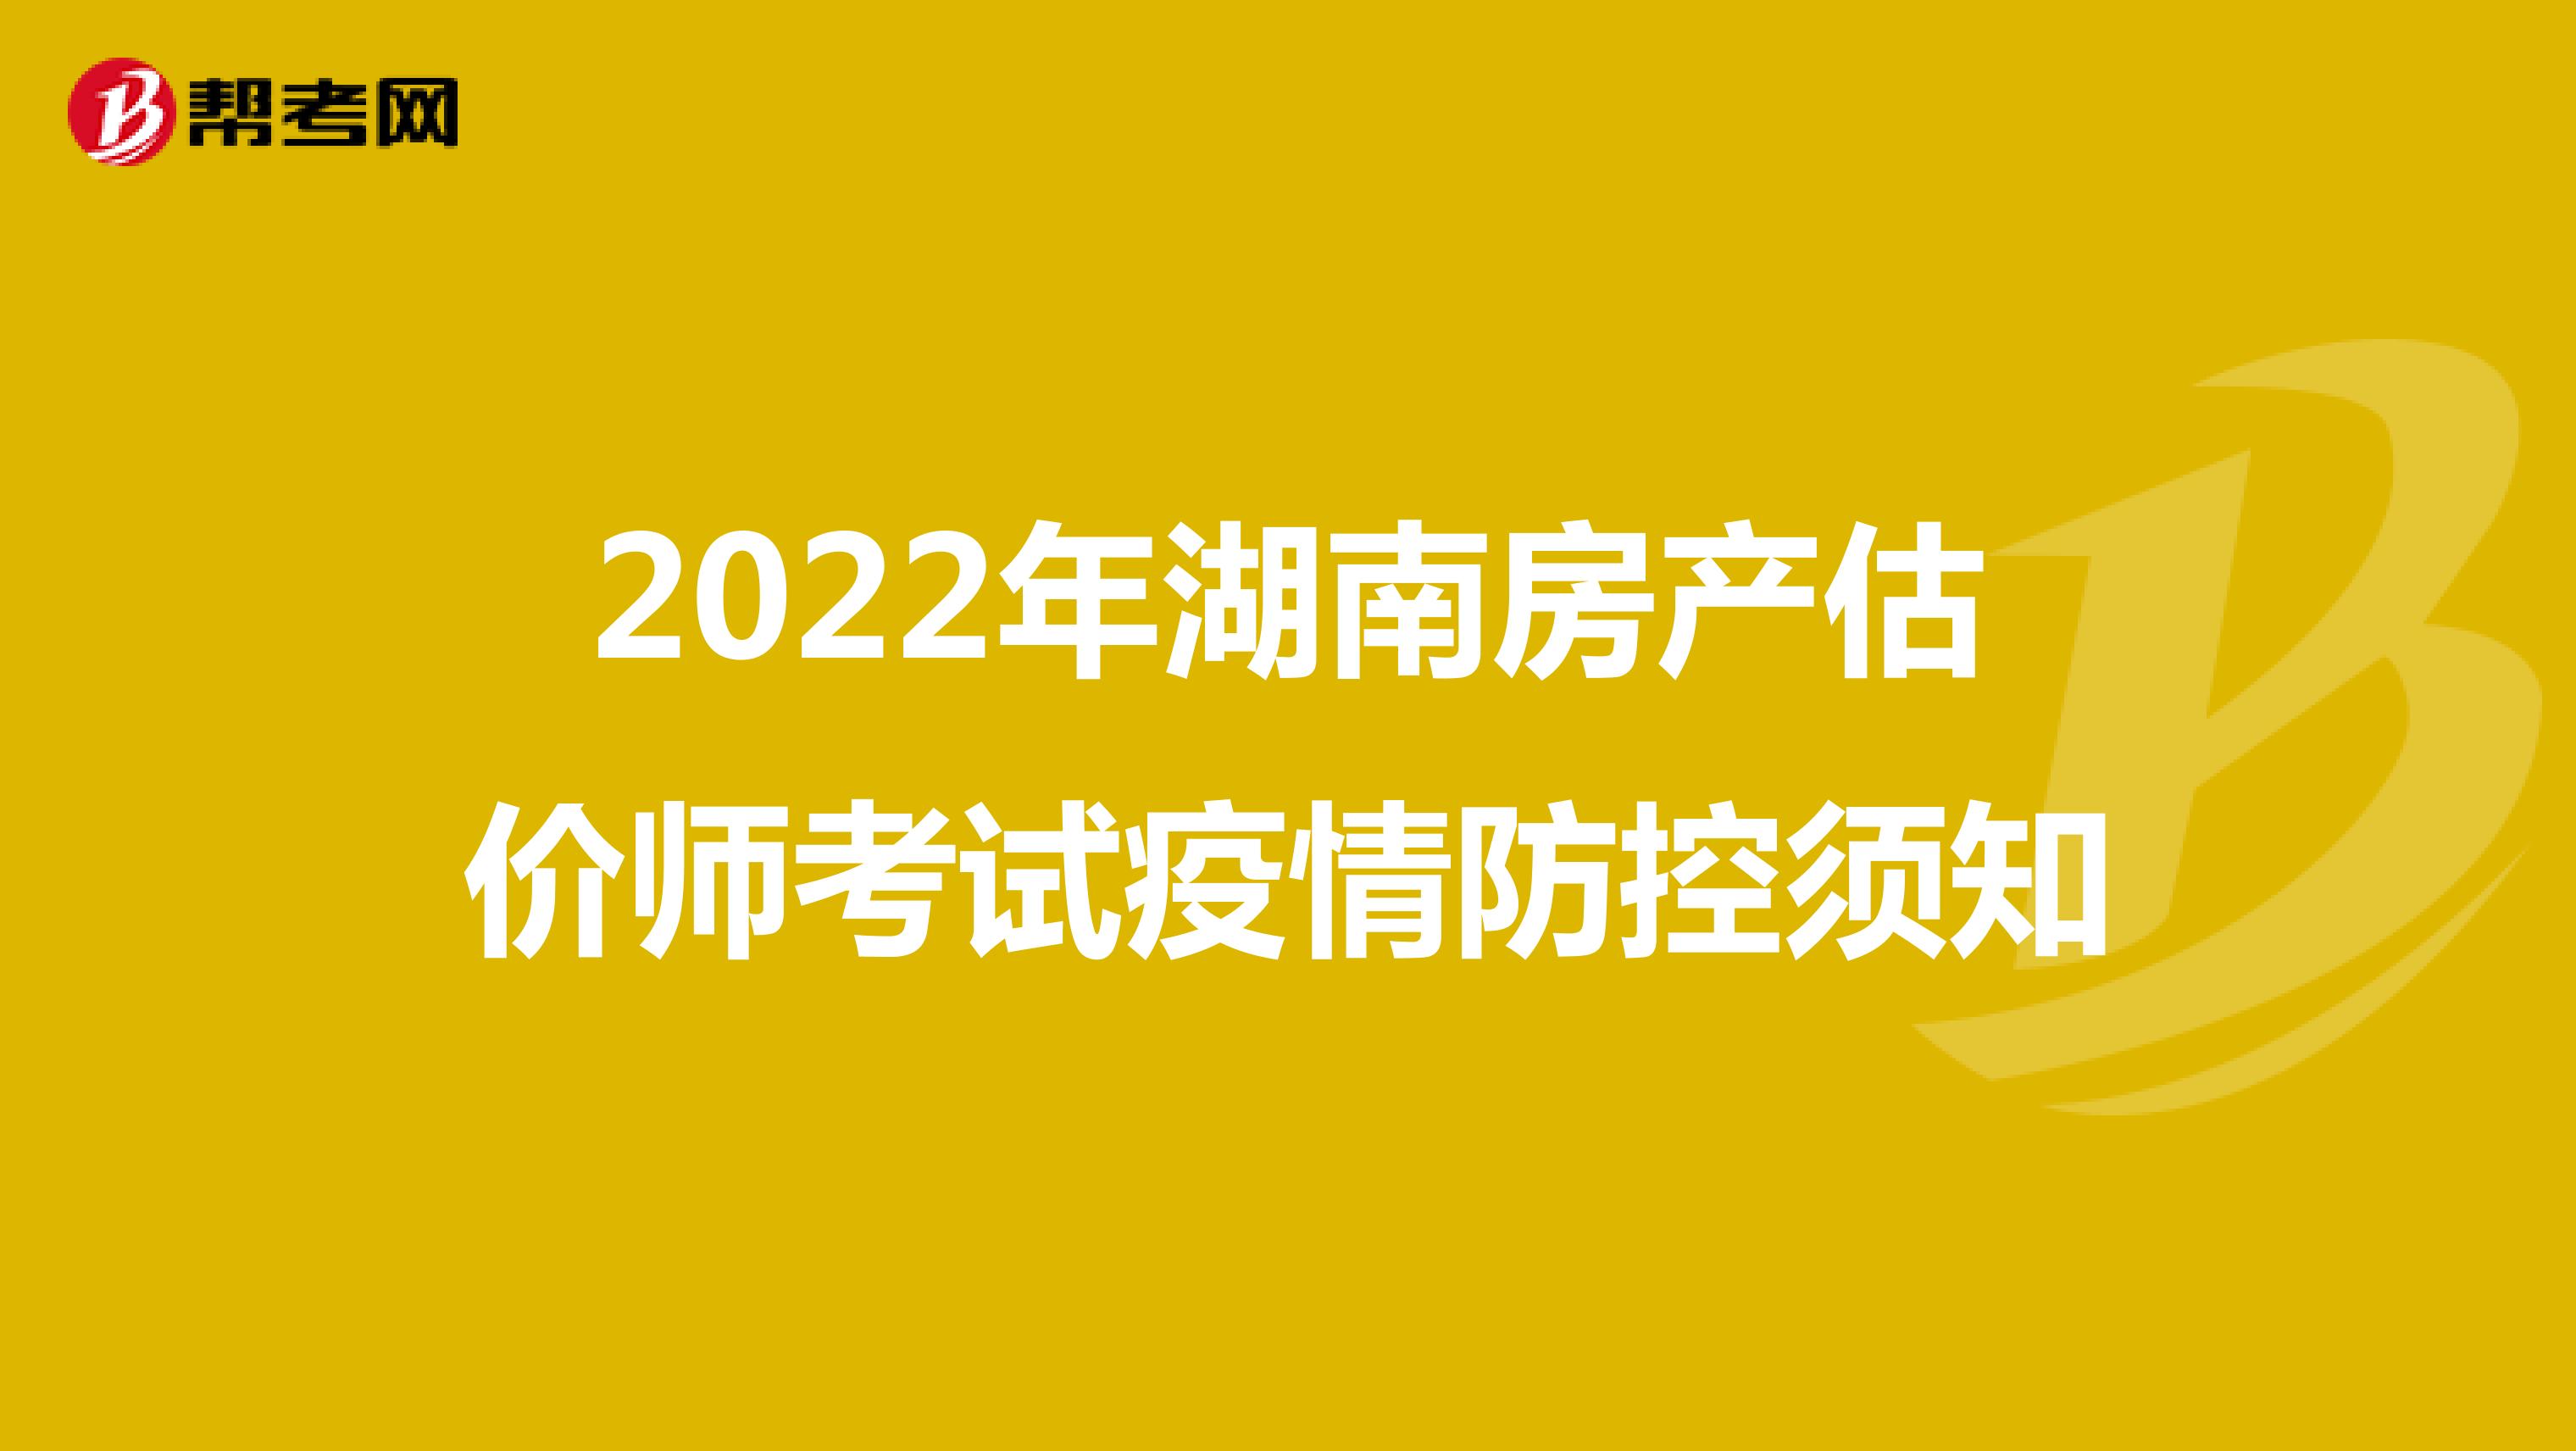 2022年湖南房产估价师考试疫情防控须知